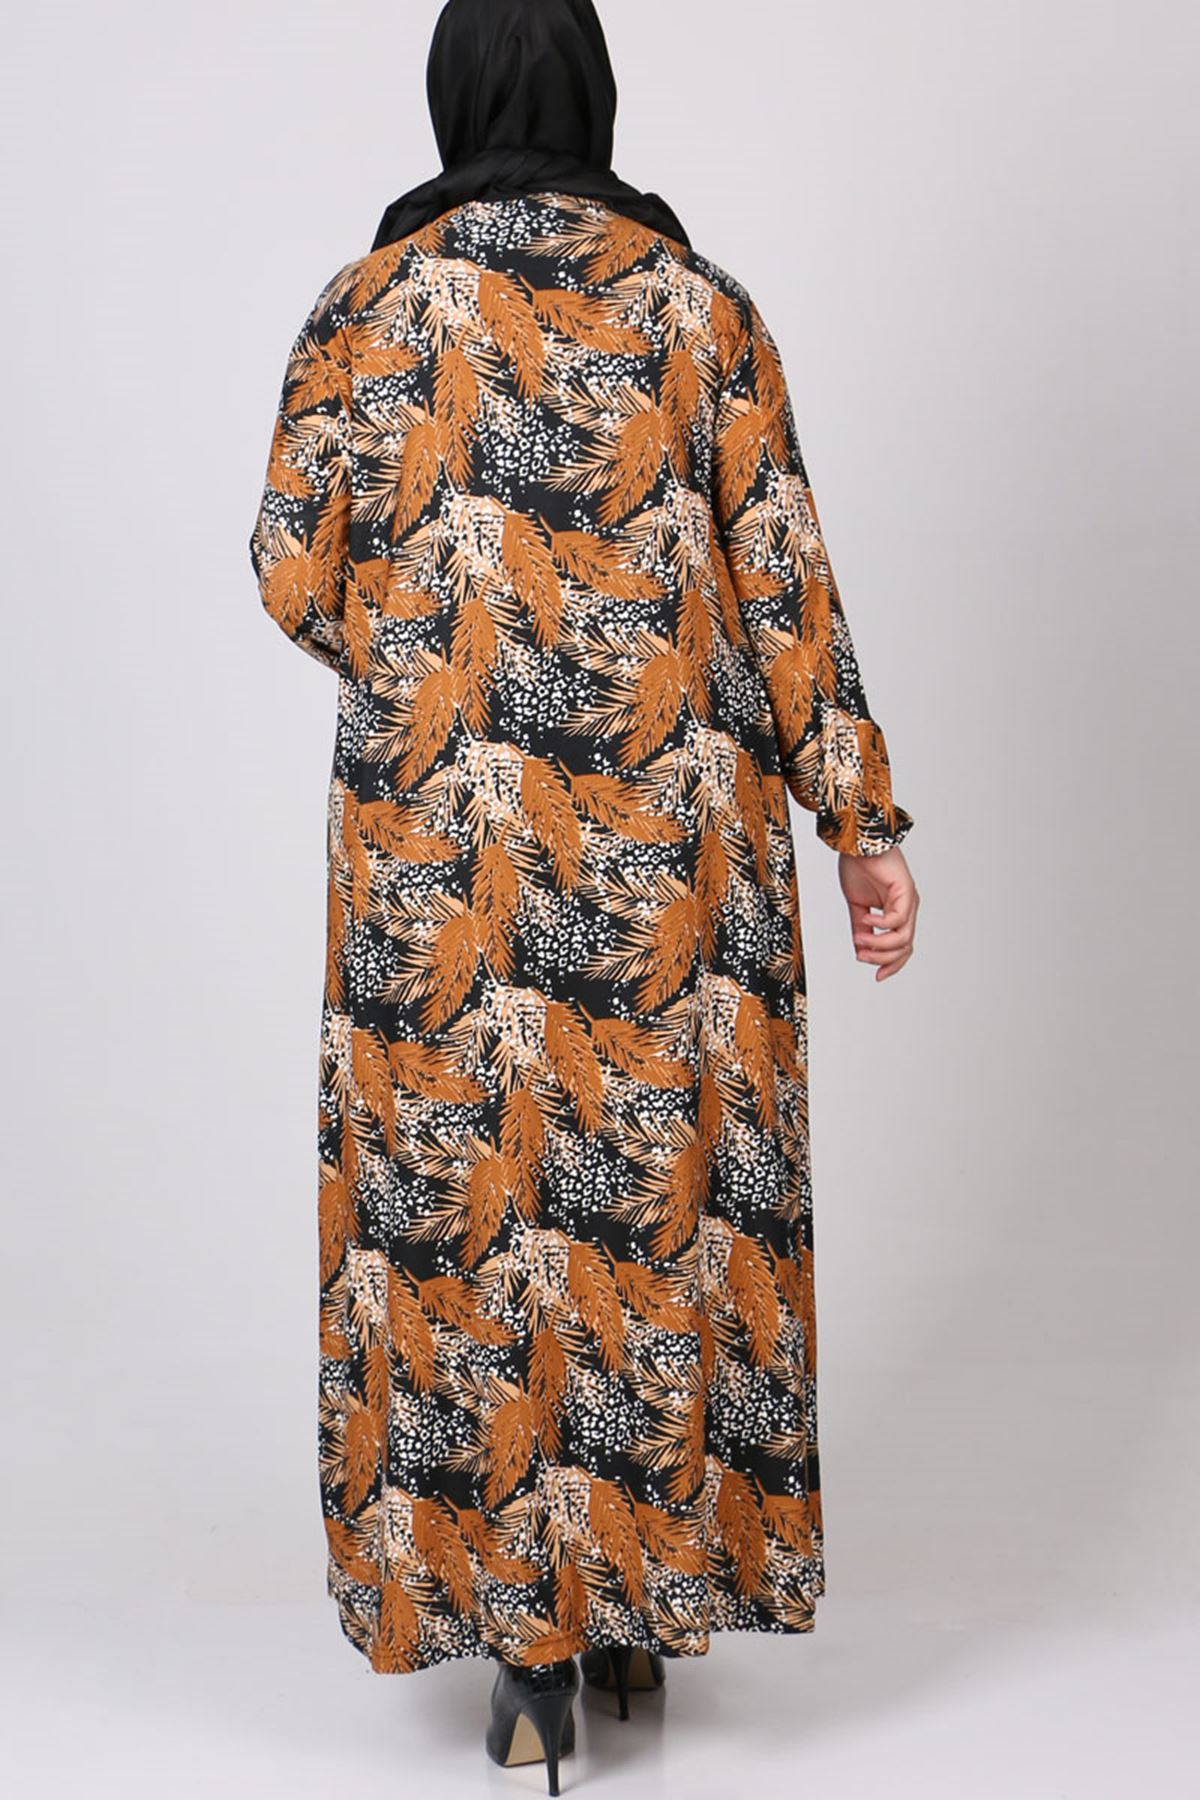 22023 Büyük Beden Kolu Lastikli Örme Krep Elbise - Safran Yapraklı